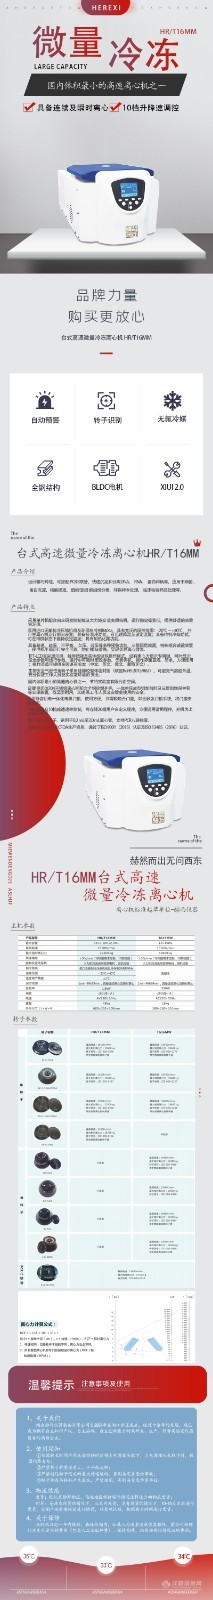 HRT16MM微量.jpg